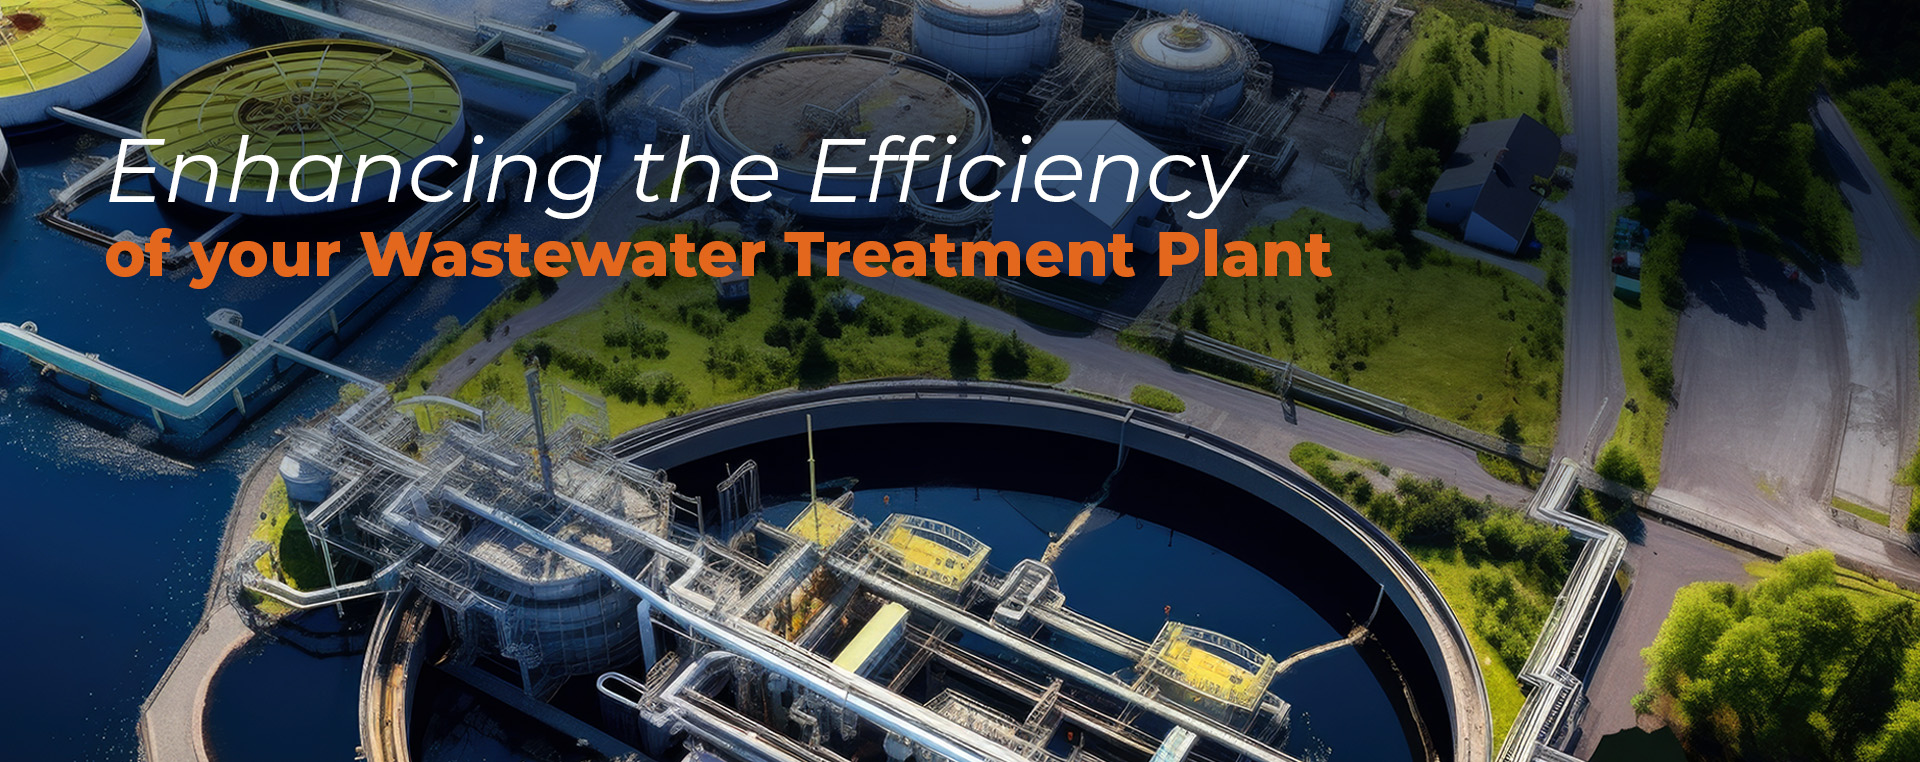 Blog_Header_Enhancing_Wastewater_Efficiency